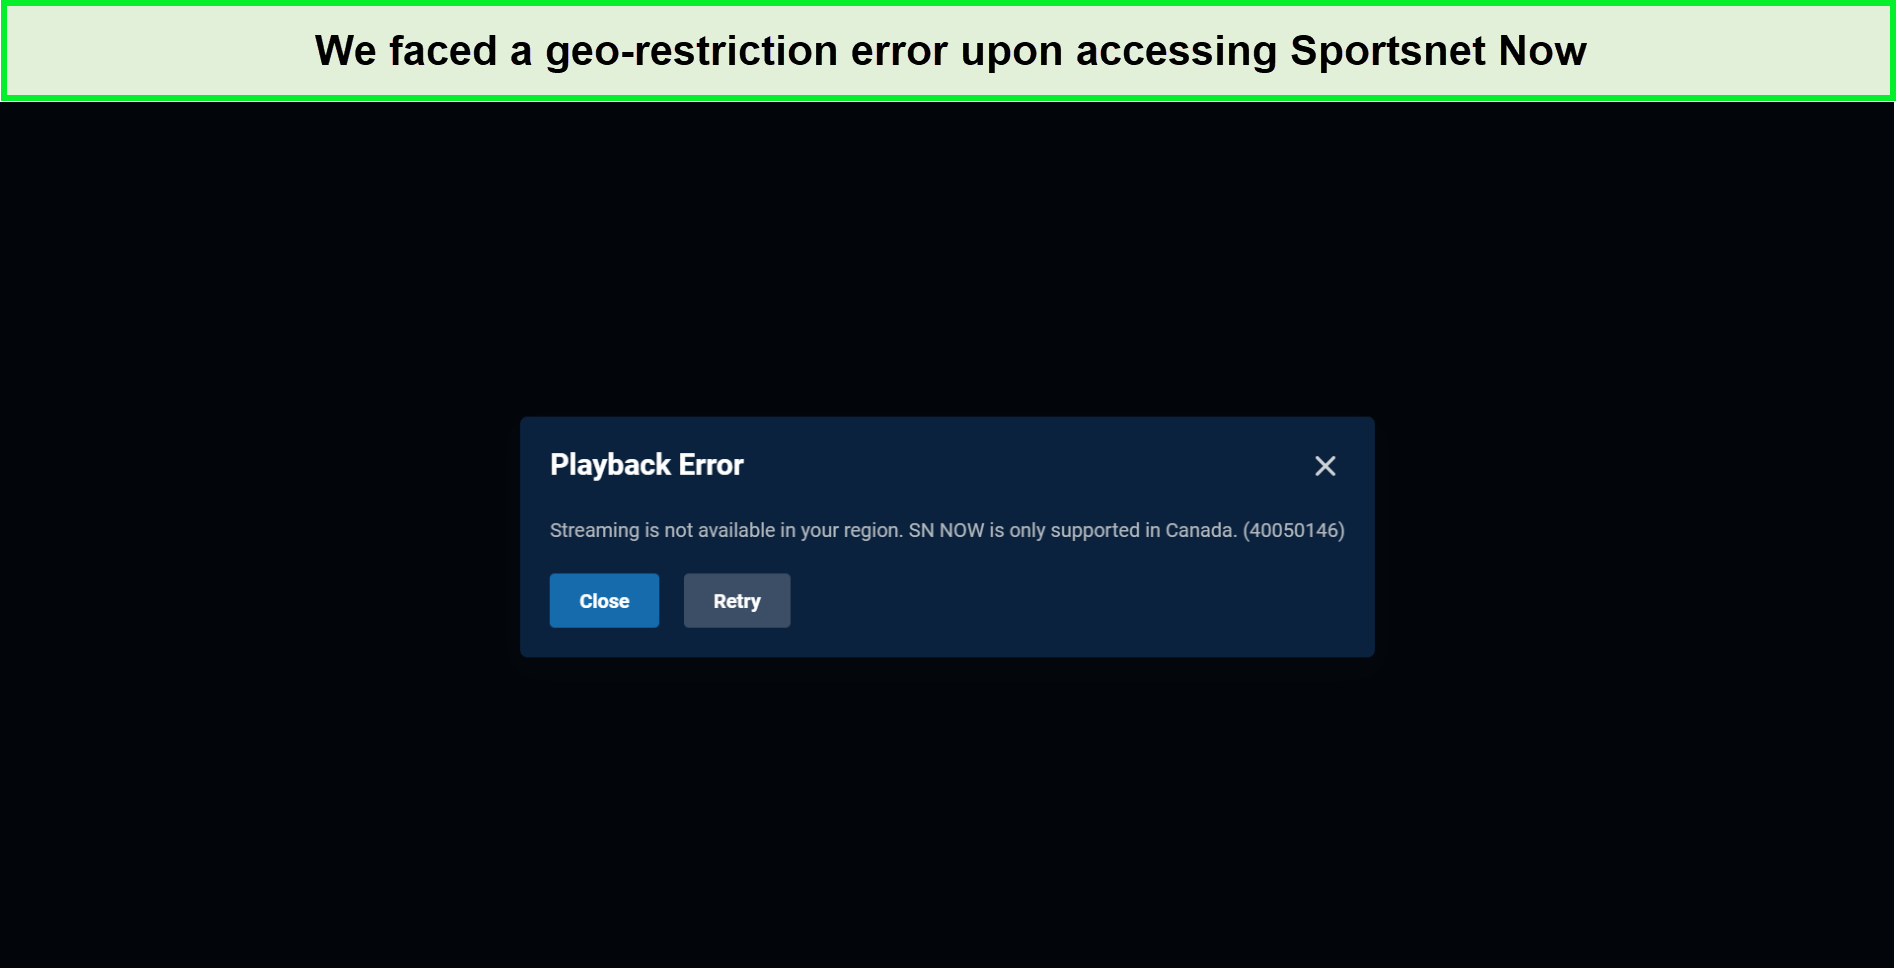 sportsnet-now-in-Singapore-geo-restriction-error